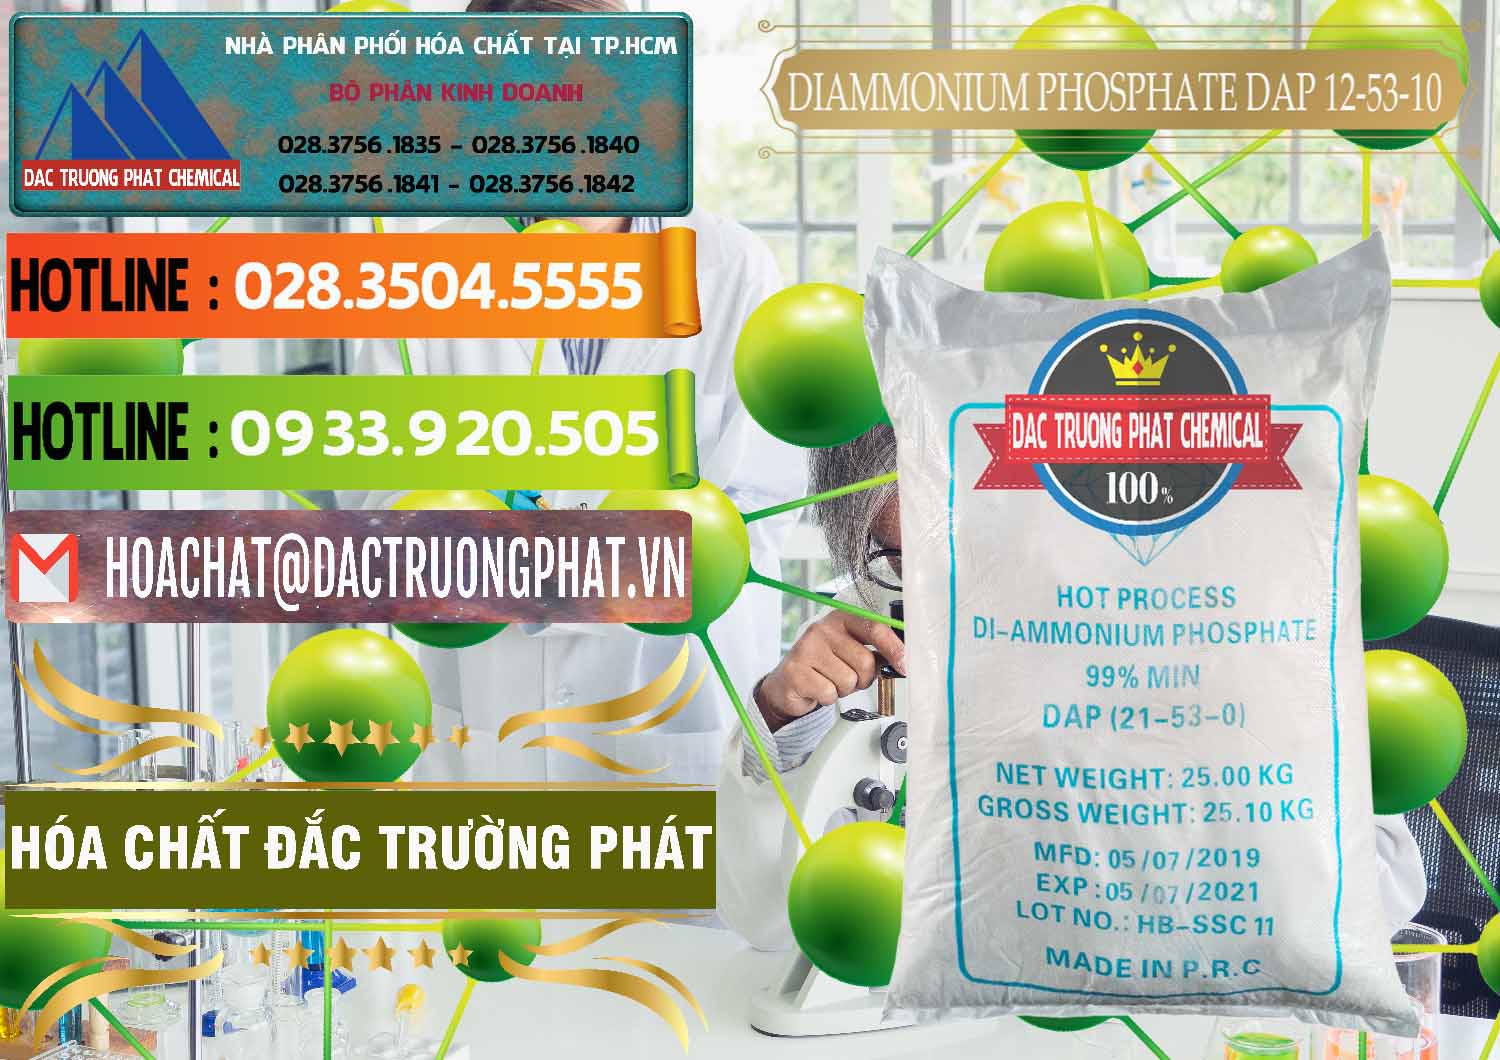 Nơi chuyên kinh doanh - bán DAP - Diammonium Phosphate Trung Quốc China - 0319 - Công ty nhập khẩu và phân phối hóa chất tại TP.HCM - cungcaphoachat.com.vn